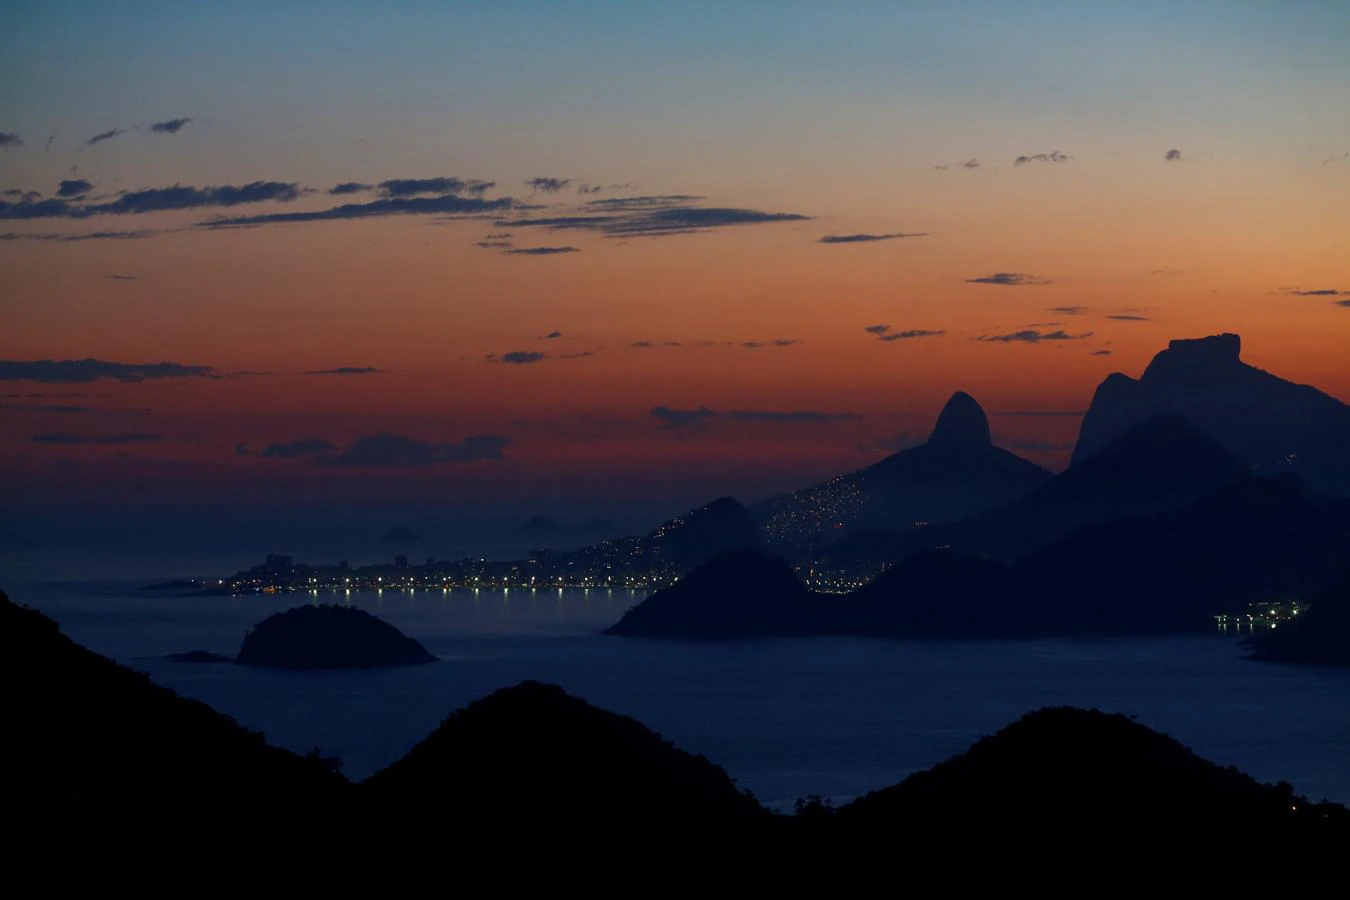 Río de belleza. Río de Janeiro al anochecer. La imagen está tomada desde Niteroi, una ciudad situada al otro lado de la bahía de Guanabara y unida a Río de Janeiro por el famoso puente Río-Niteroi de 14 kilómetros de extensió